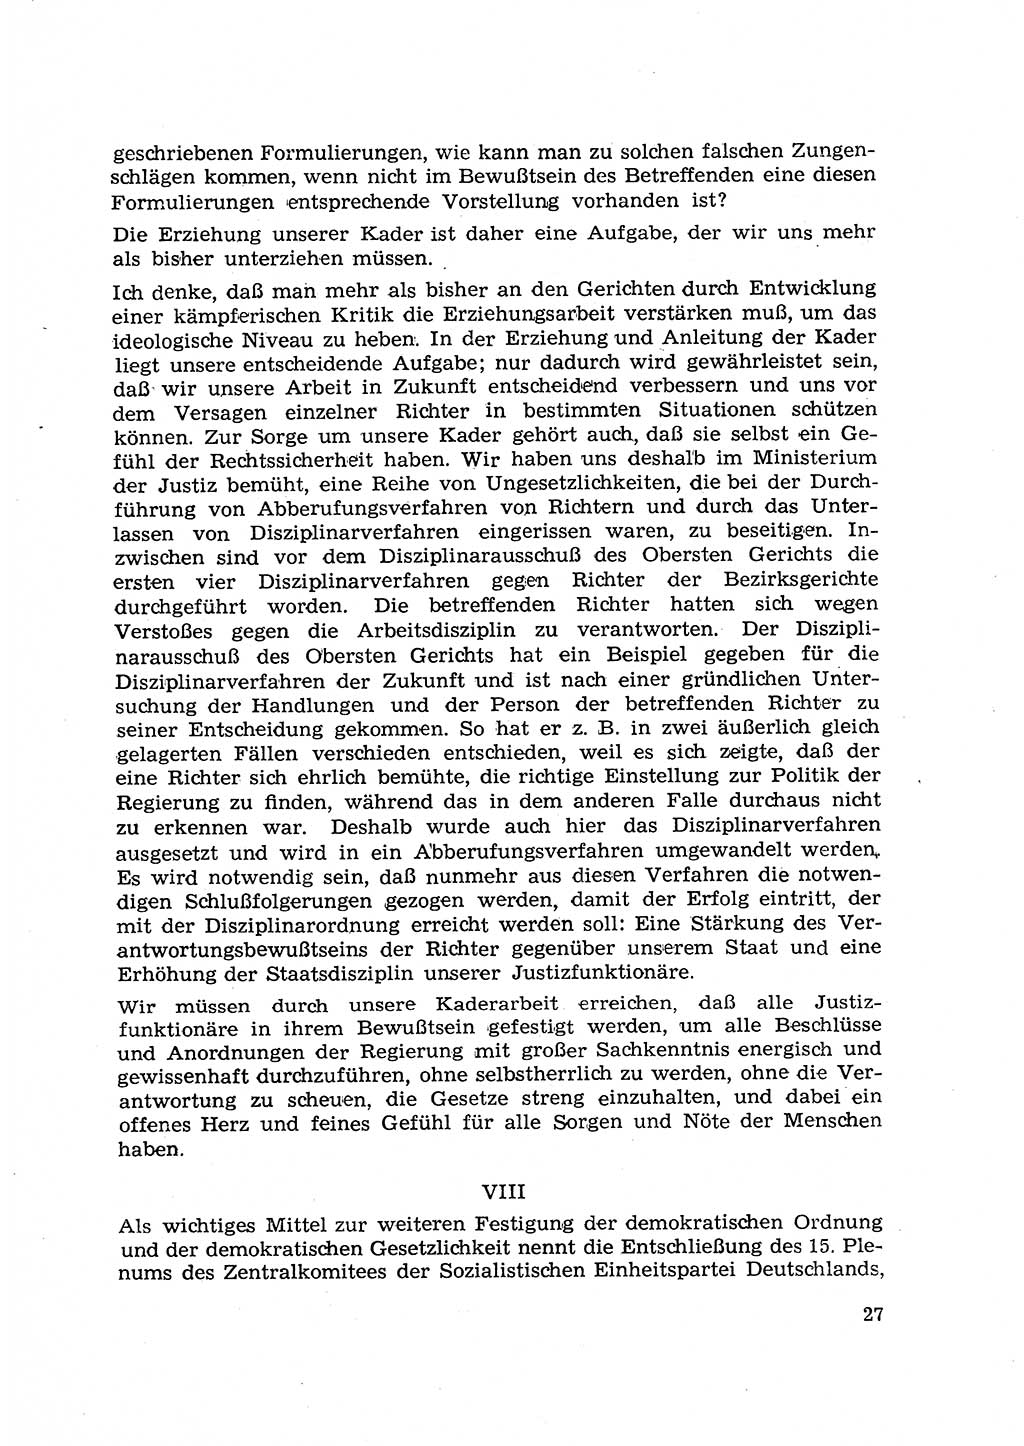 Hauptaufgaben der Justiz [Deutsche Demokratische Republik (DDR)] bei der Durchführung des neuen Kurses 1953, Seite 27 (Hpt.-Aufg. J. DDR 1953, S. 27)